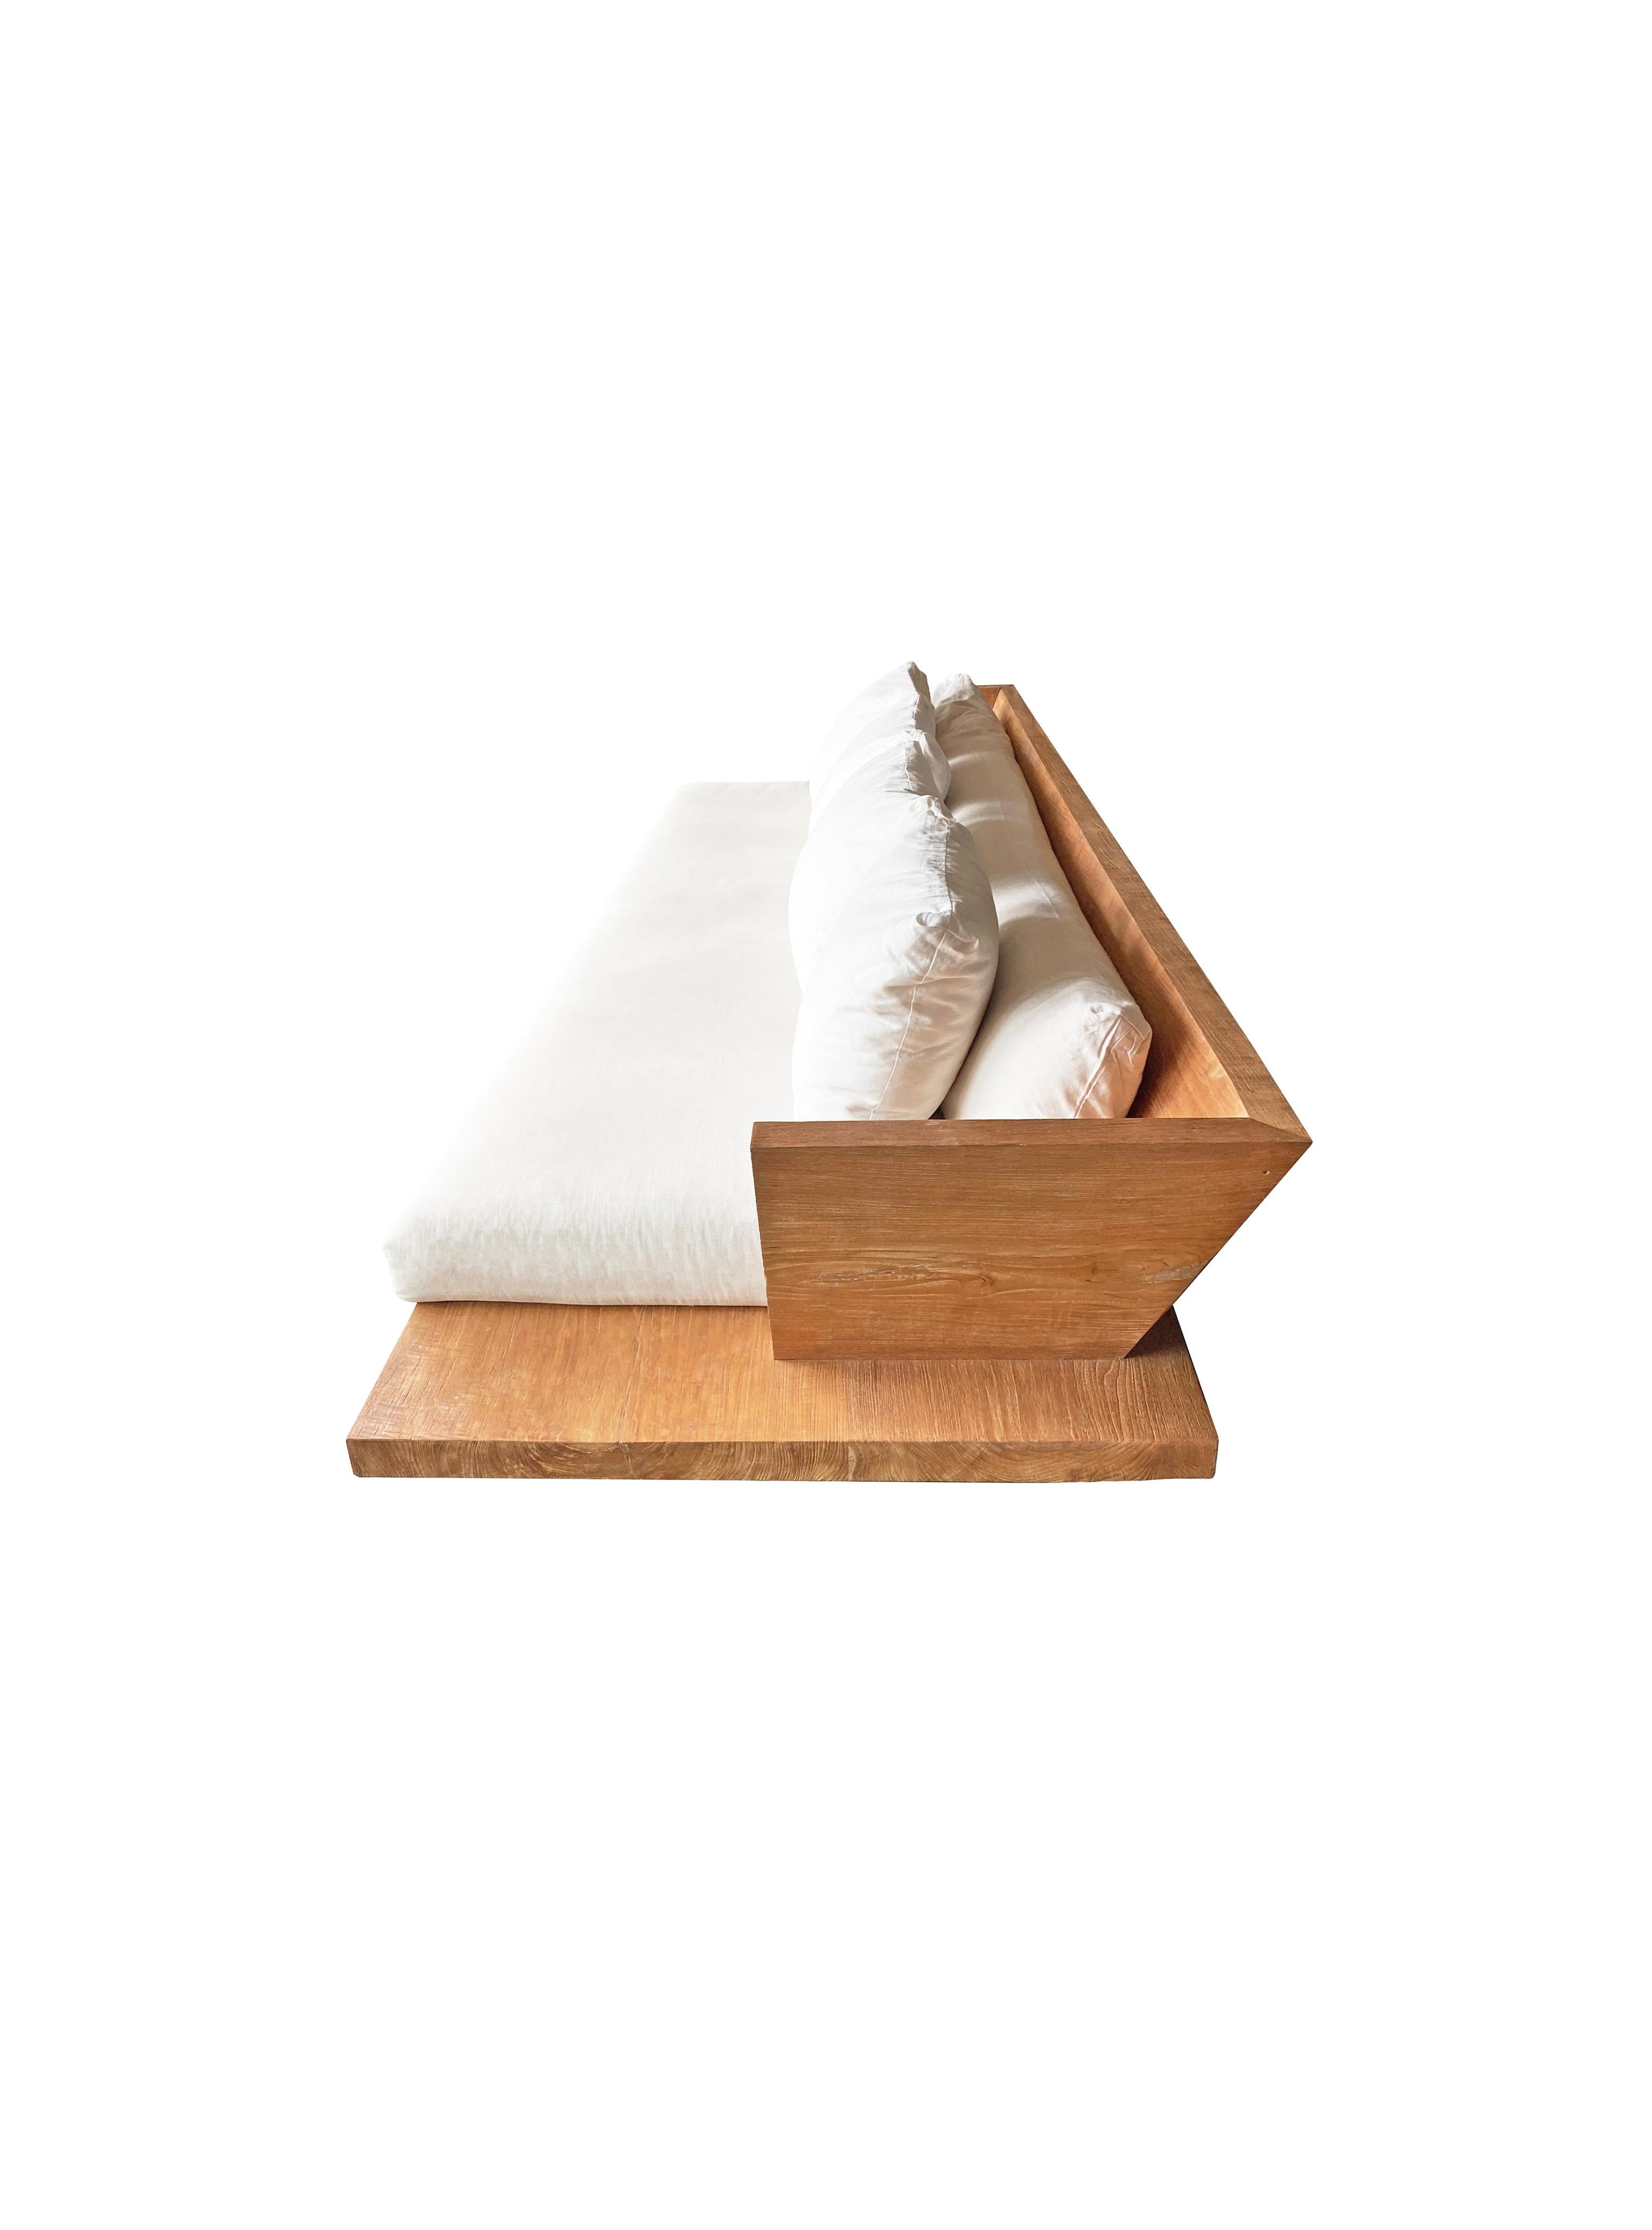 Dieses moderne Teakholzsofa besteht aus einer großen Teakholzplatte, einer Rückenlehne und wird durch zwei flache Teakholzblöcke erhöht. Das Sofa wird mit Kissen geliefert, die sich über die gesamte Länge der Rückenlehne und der Sitzfläche